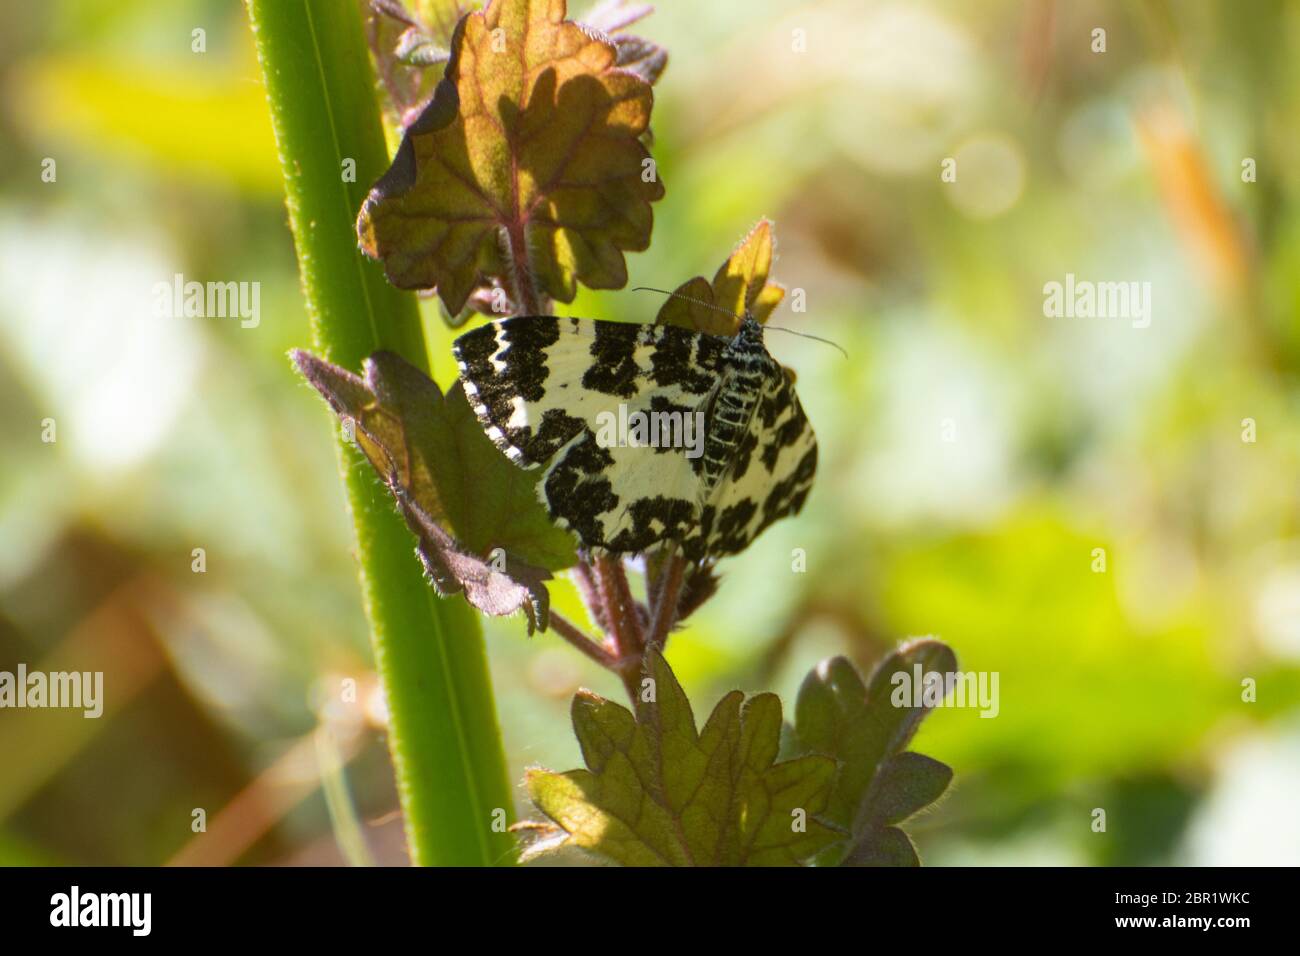 Argent und Soble Motte (Rheumaptera hastate), ein tagenfliegender Motte der Familie Geometridae mit schwarz-weißen Markierungen, UK Stockfoto